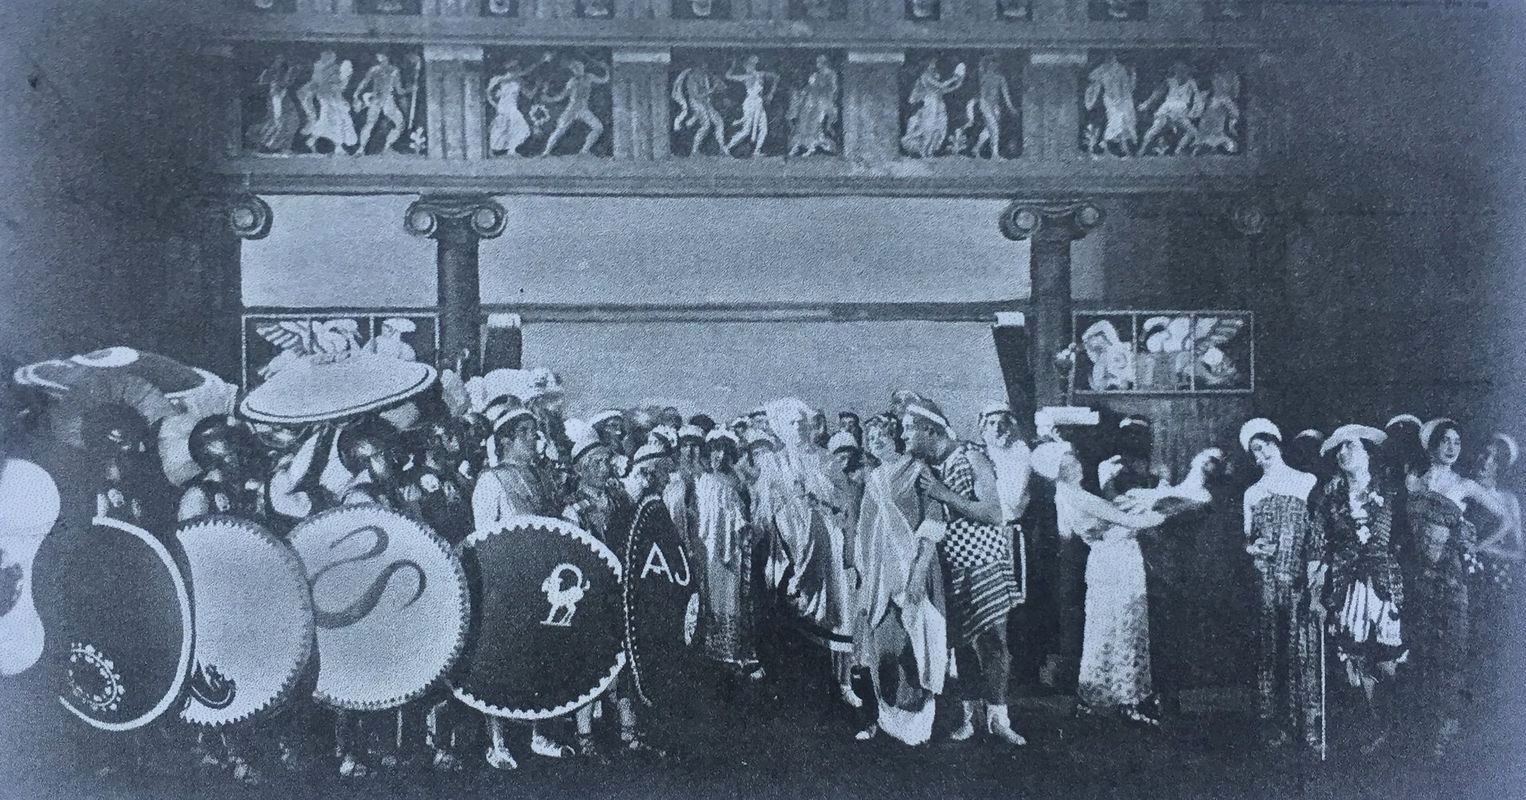 Akt 2 aus "Die schöne Helena", inszeniert vo  Max Reinhardt in München, 1911. (Foto: Jos. Paul Böhm, aus Laurence Senelicks "Jacques Offenbach and the Making of Modern Culture")